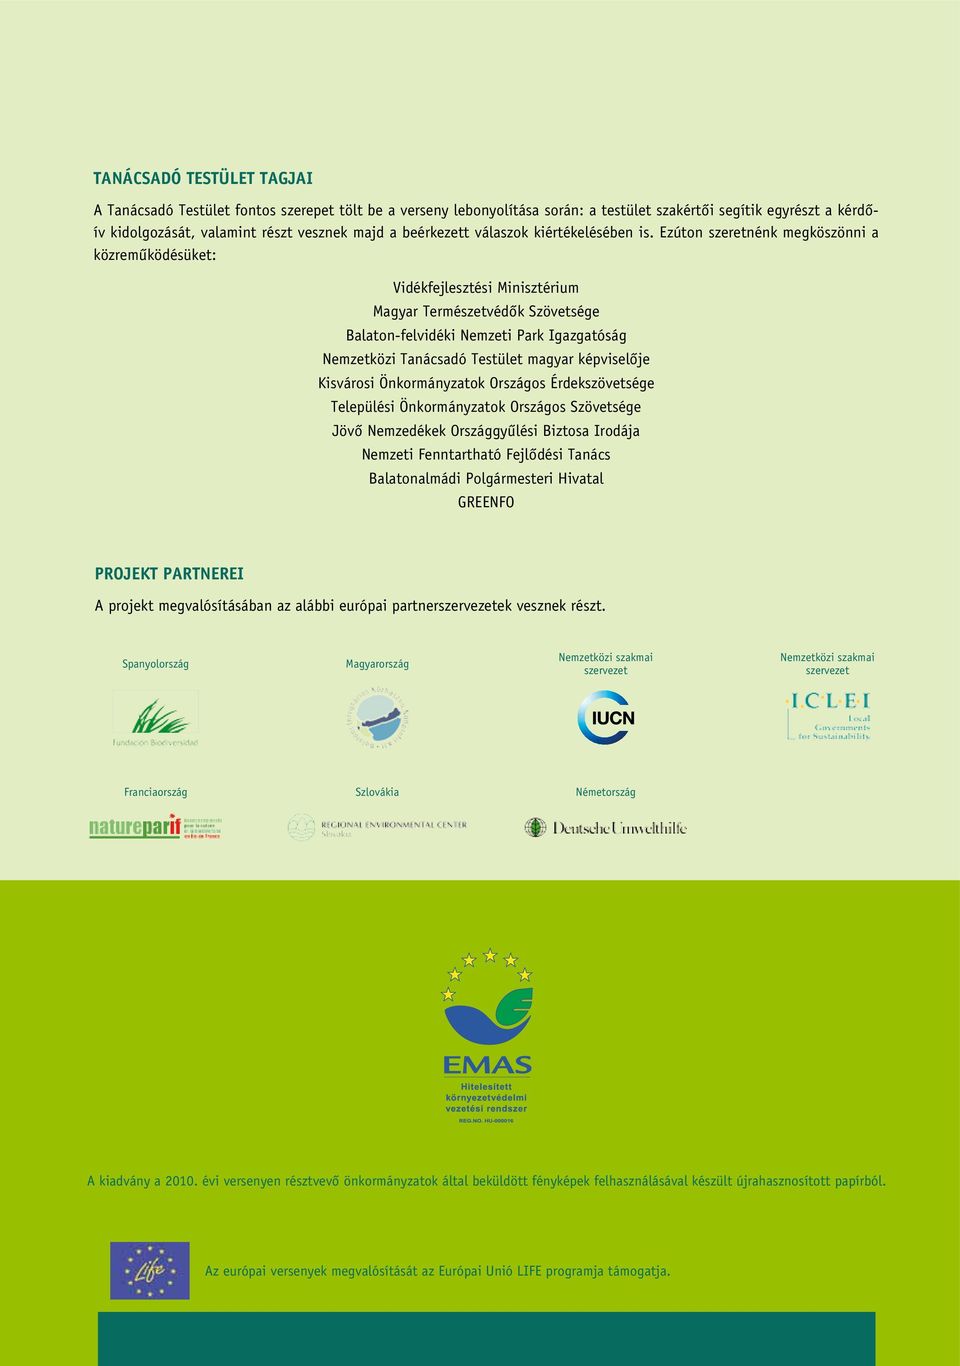 Ezúton szeretnénk megköszönni a közreműködésüket: Vidékfejlesztési Minisztérium Magyar Természetvédők Szövetsége Balaton-felvidéki Nemzeti Park Igazgatóság Nemzetközi Tanácsadó Testület magyar